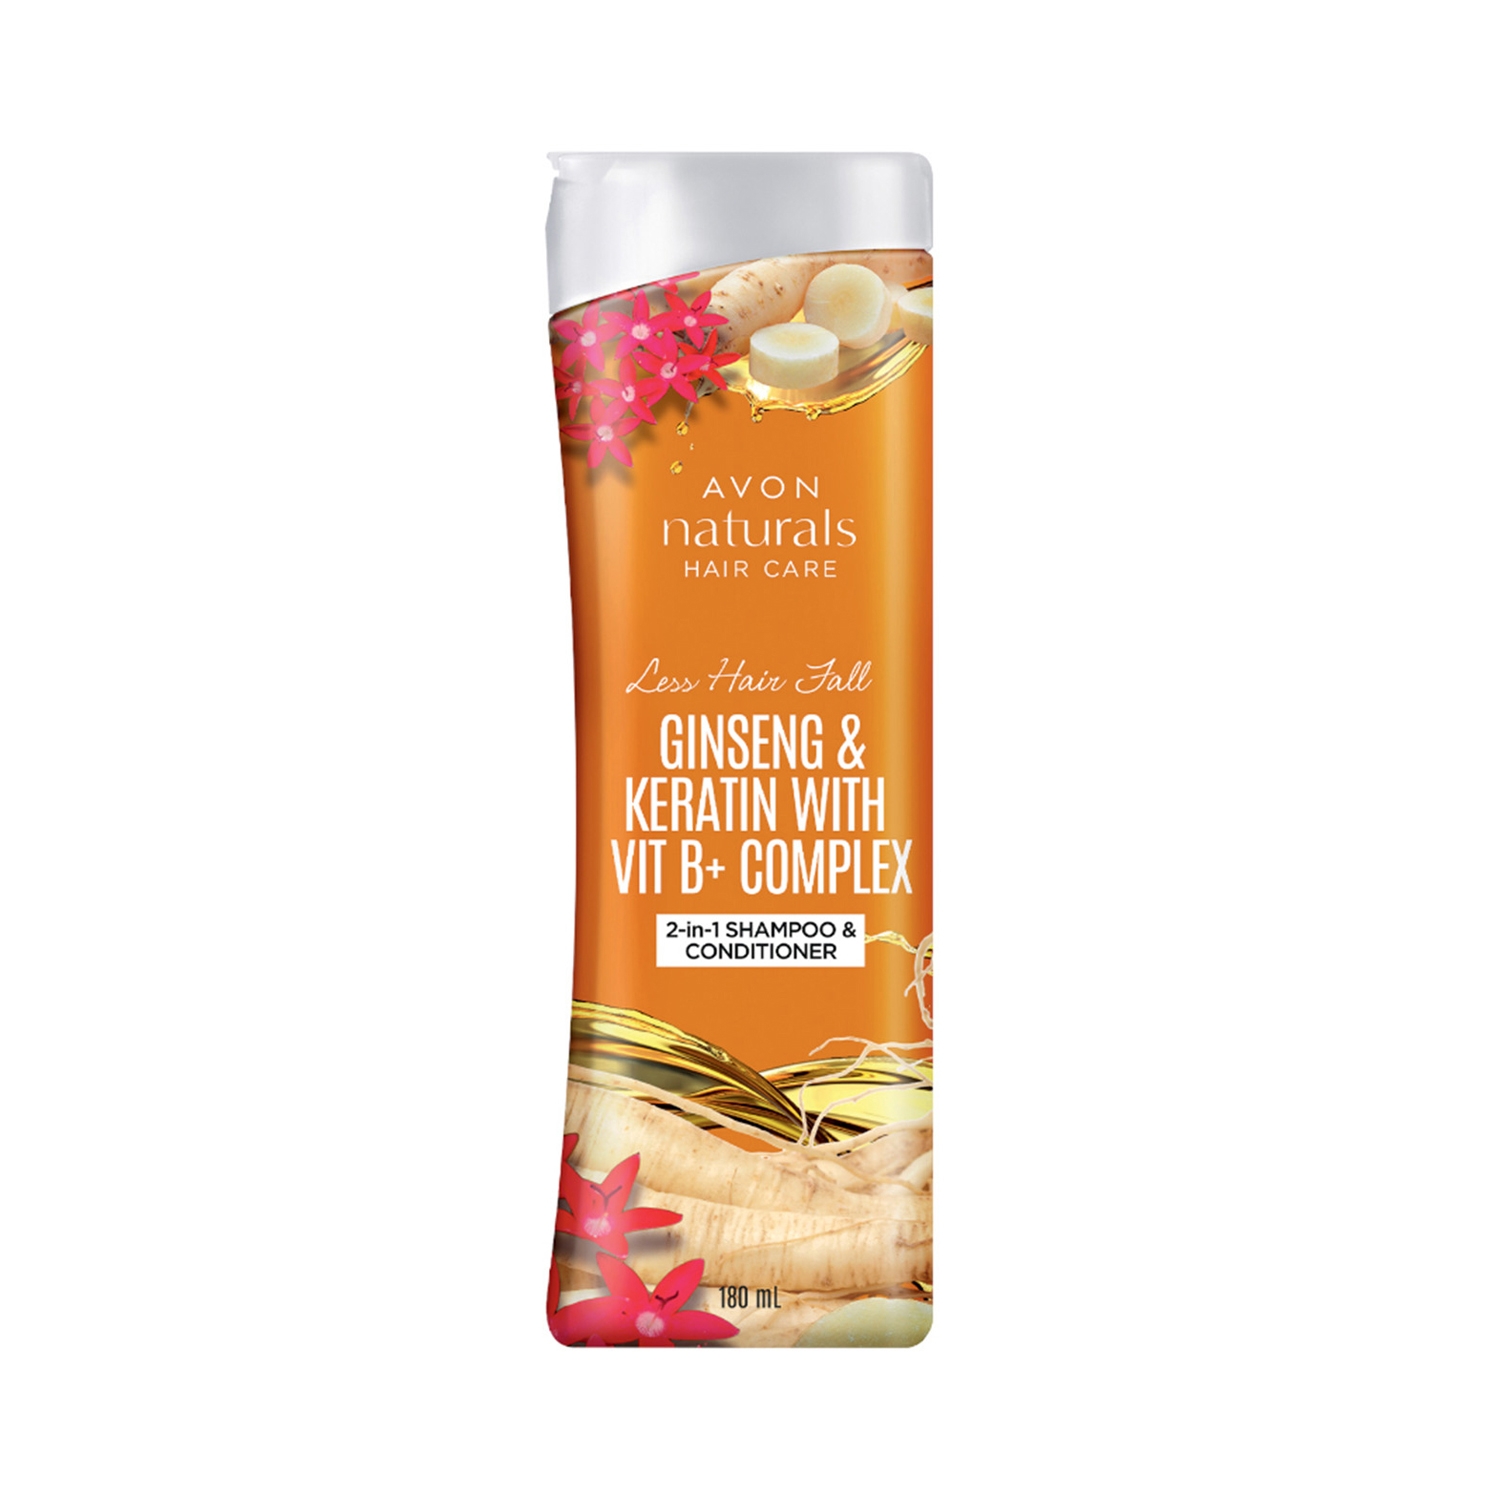 Avon | Avon Naturals Restage Ginseng & Keratin Vitamin-B Complex 2-In-1 Shampoo & Conditioner (180ml)